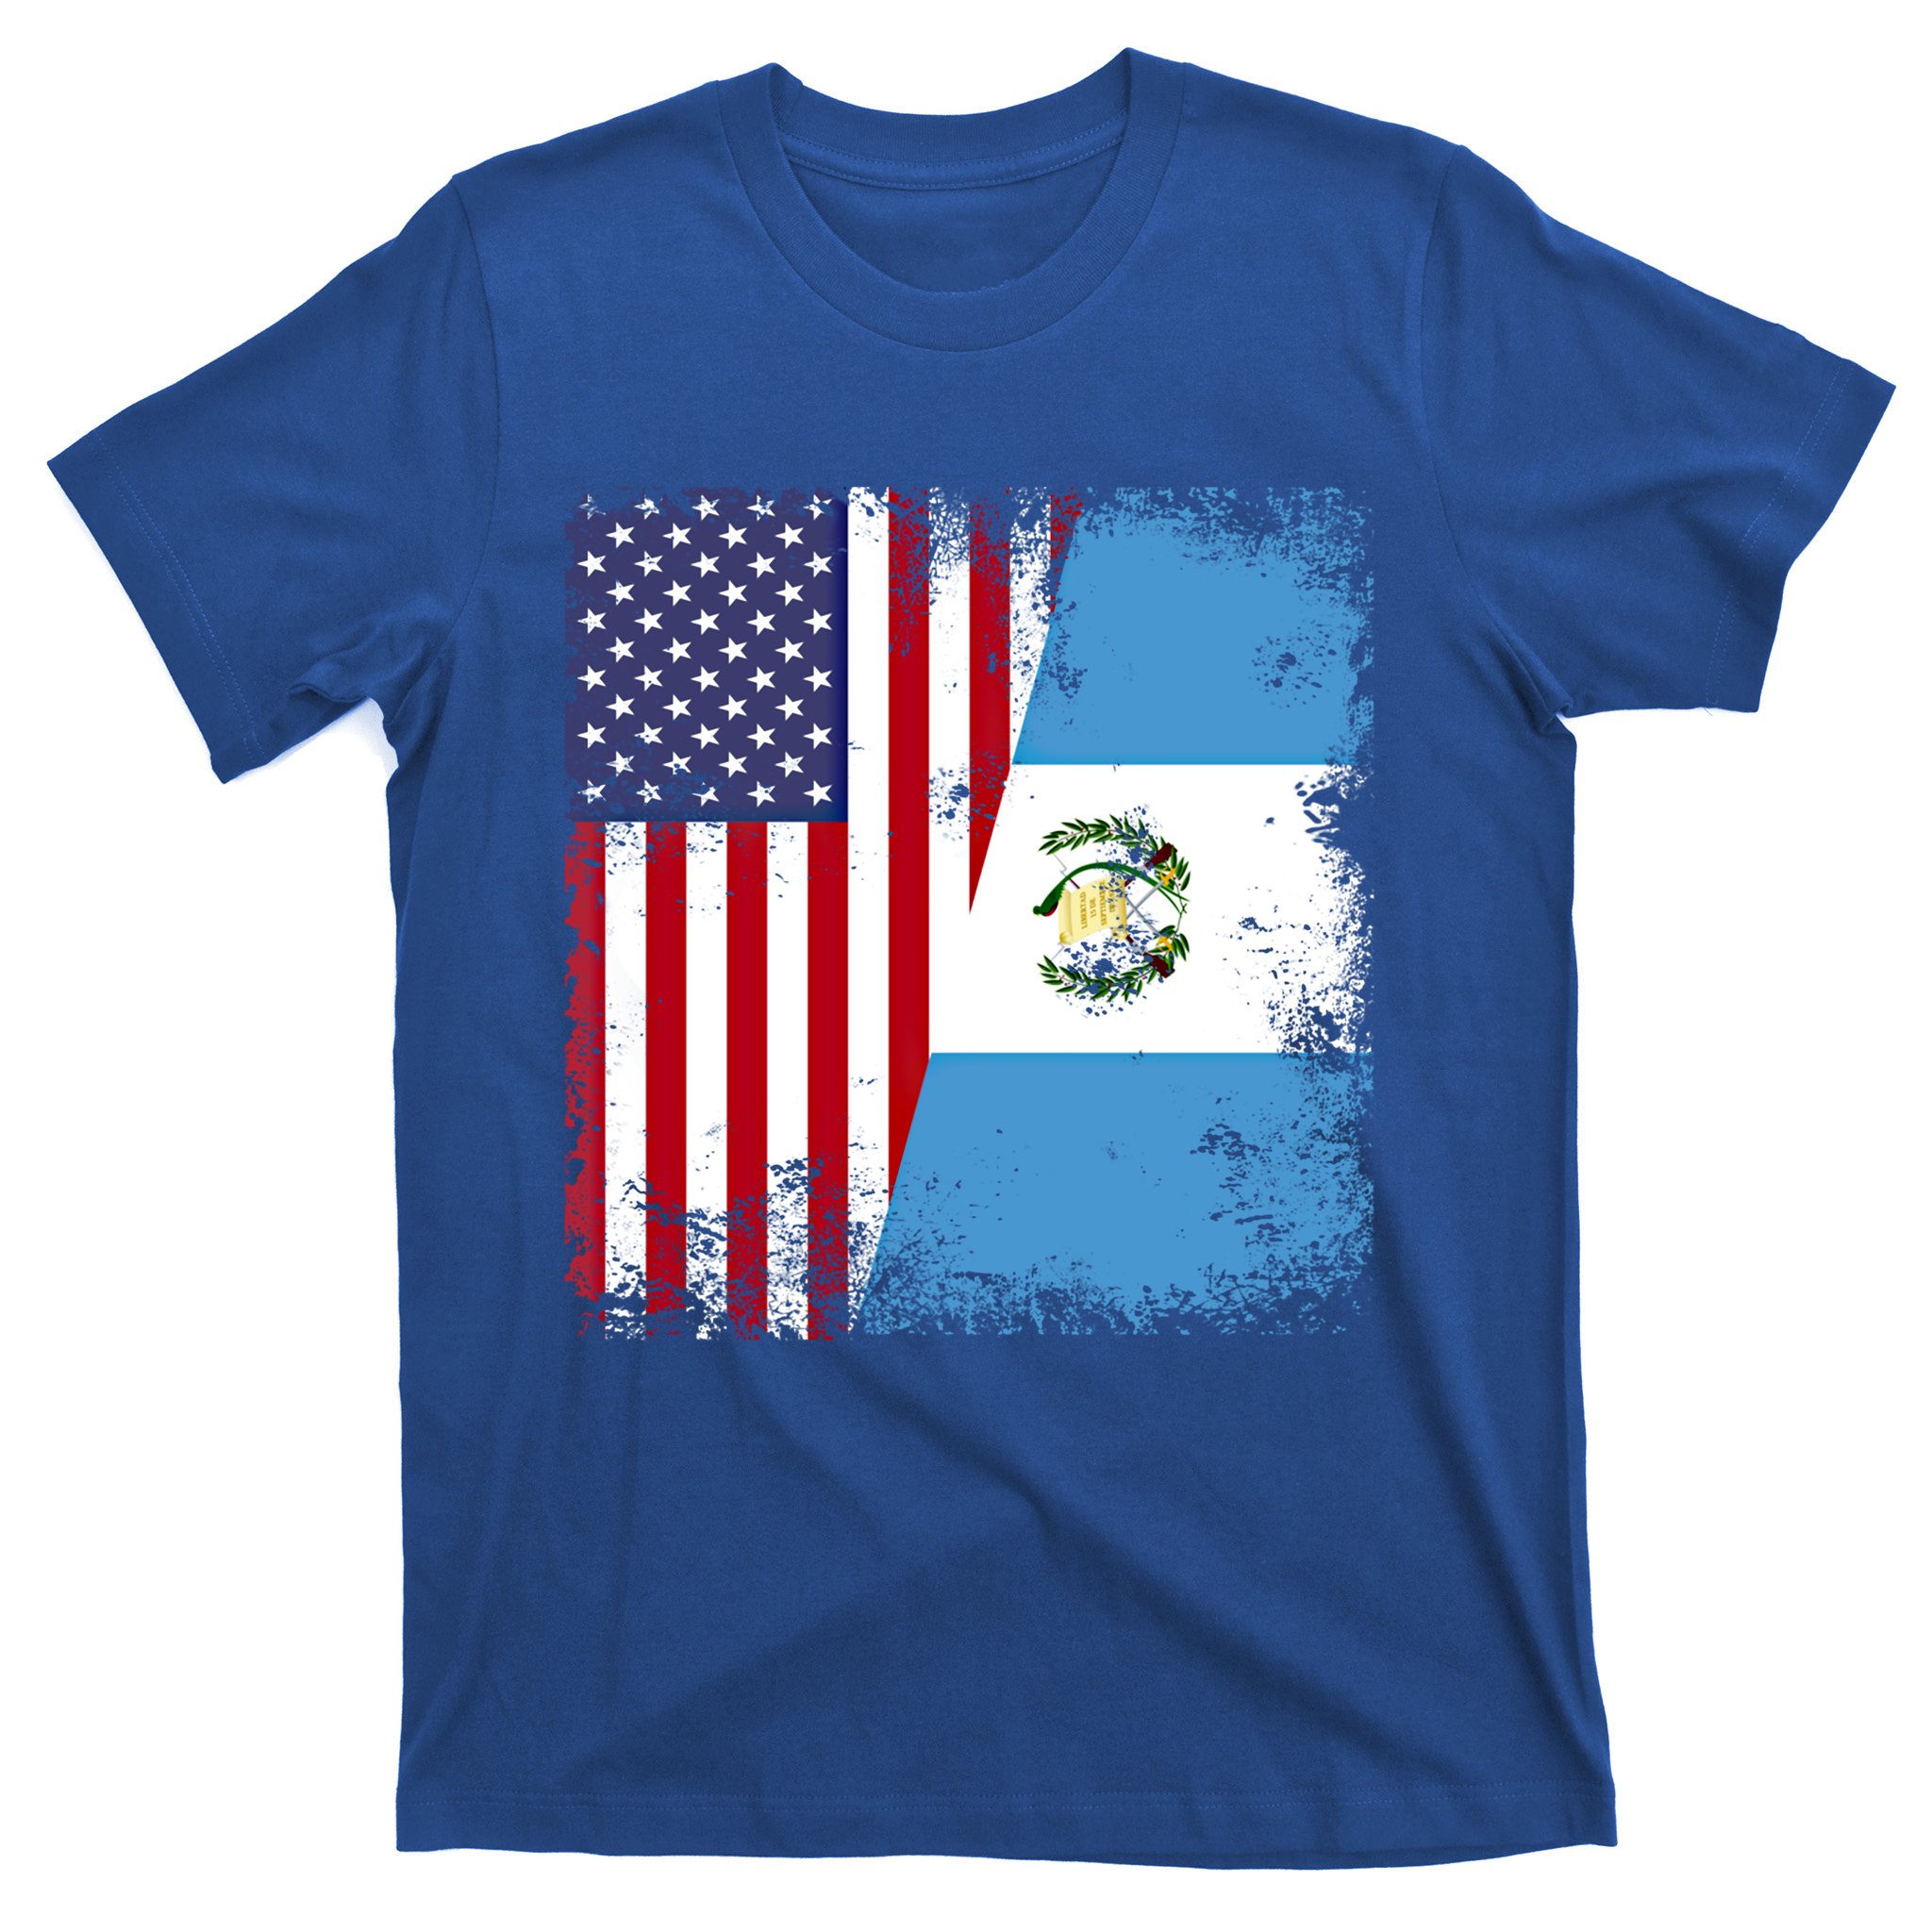 Popular] Grunge Mexico Flag Hawaiian Shirt - Jomagift